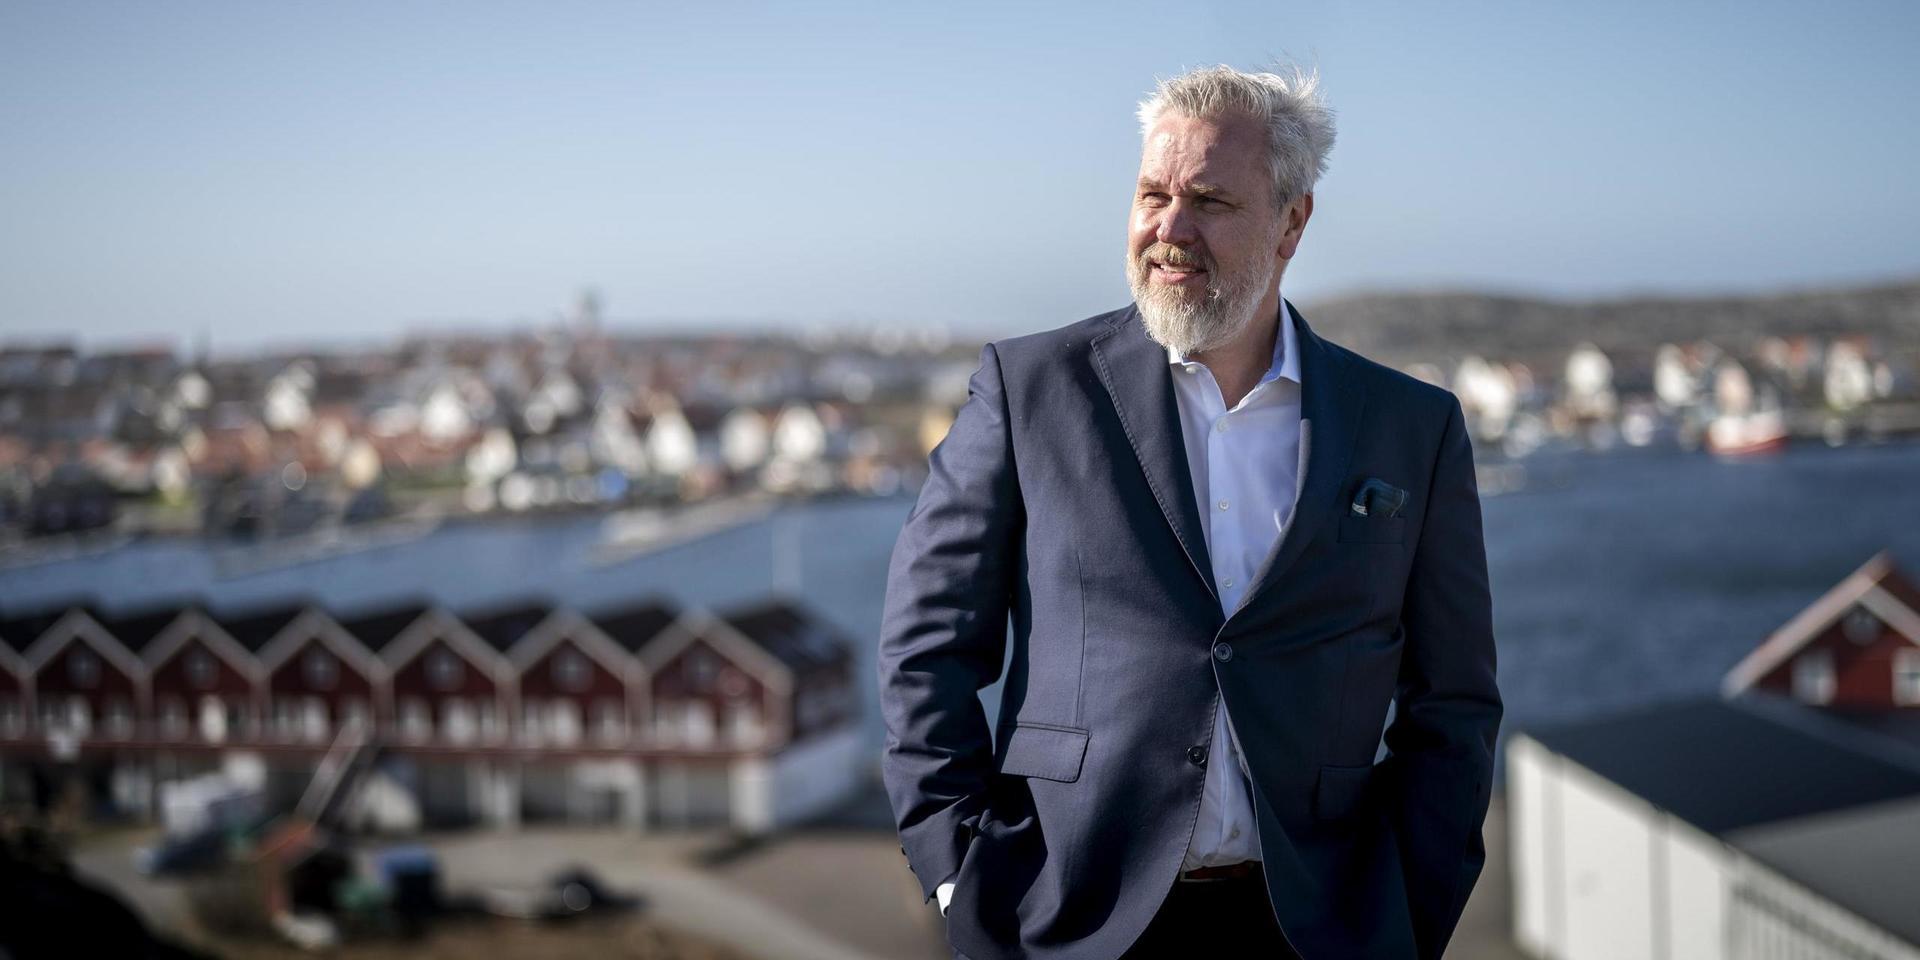 Roy Høiås räknar med att den nya laxodlingen kommer generera tusentals jobb.